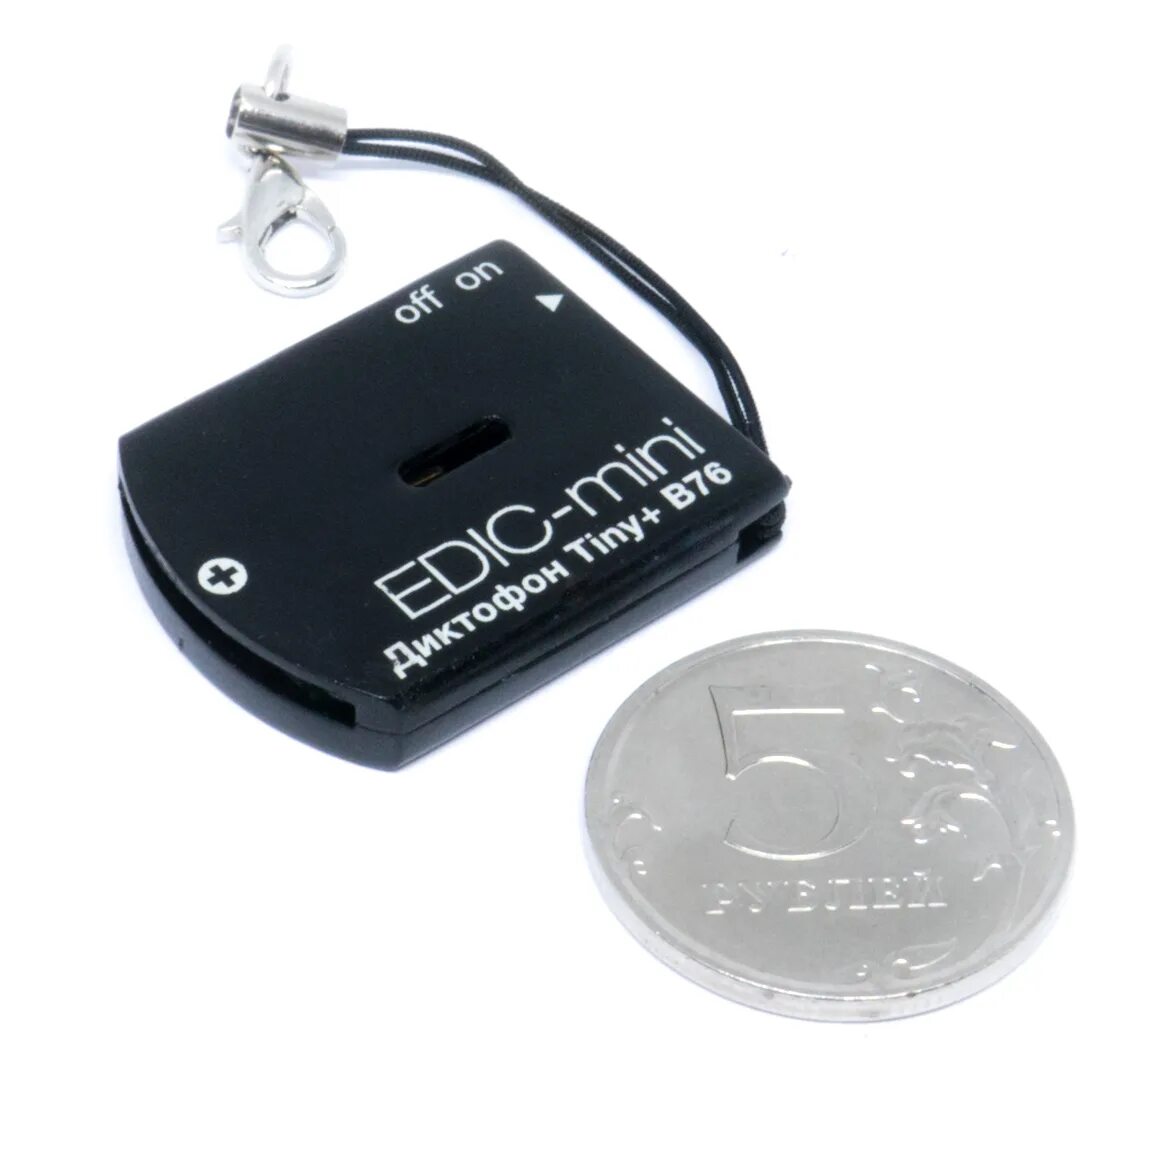 Диктофон эдик мини. Edic-Mini tiny + b76-150hq. Edic Mini tiny b76. Диктофон Edic-Mini tiny b76. Edic-Mini tiny+ в76 (150hq).